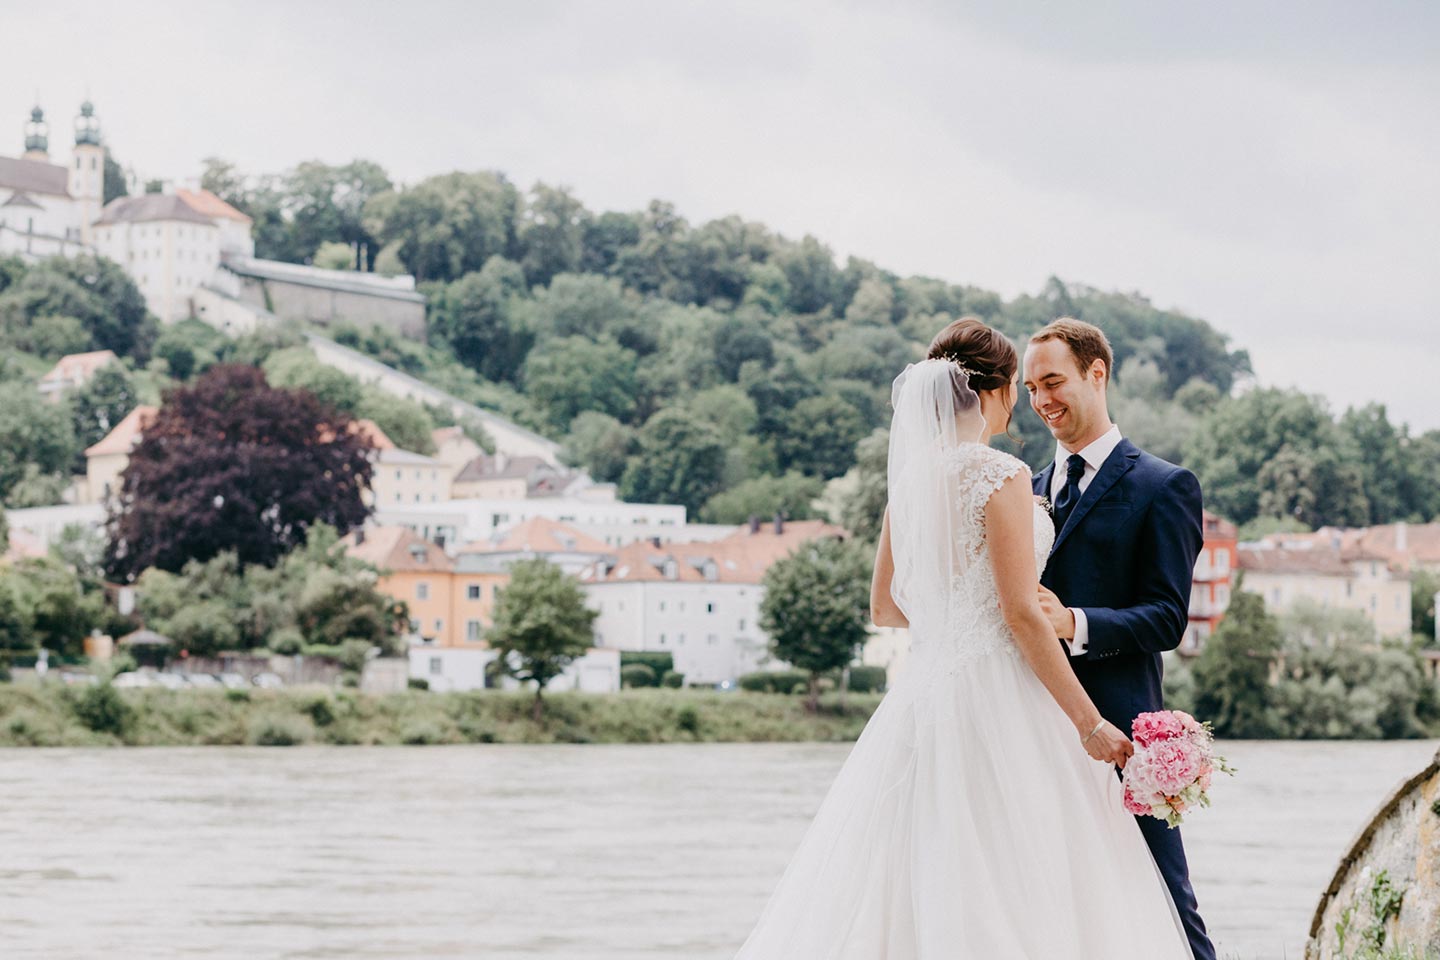 Hochzeitswahn - Braut und Bräutigam verbringen einen zärtlichen Moment am Flussufer, im Hintergrund die historischen Oberhausgebäude. Sie hält einen Blumenstrauß in der Hand; beide lächeln sanft. Oberhaus